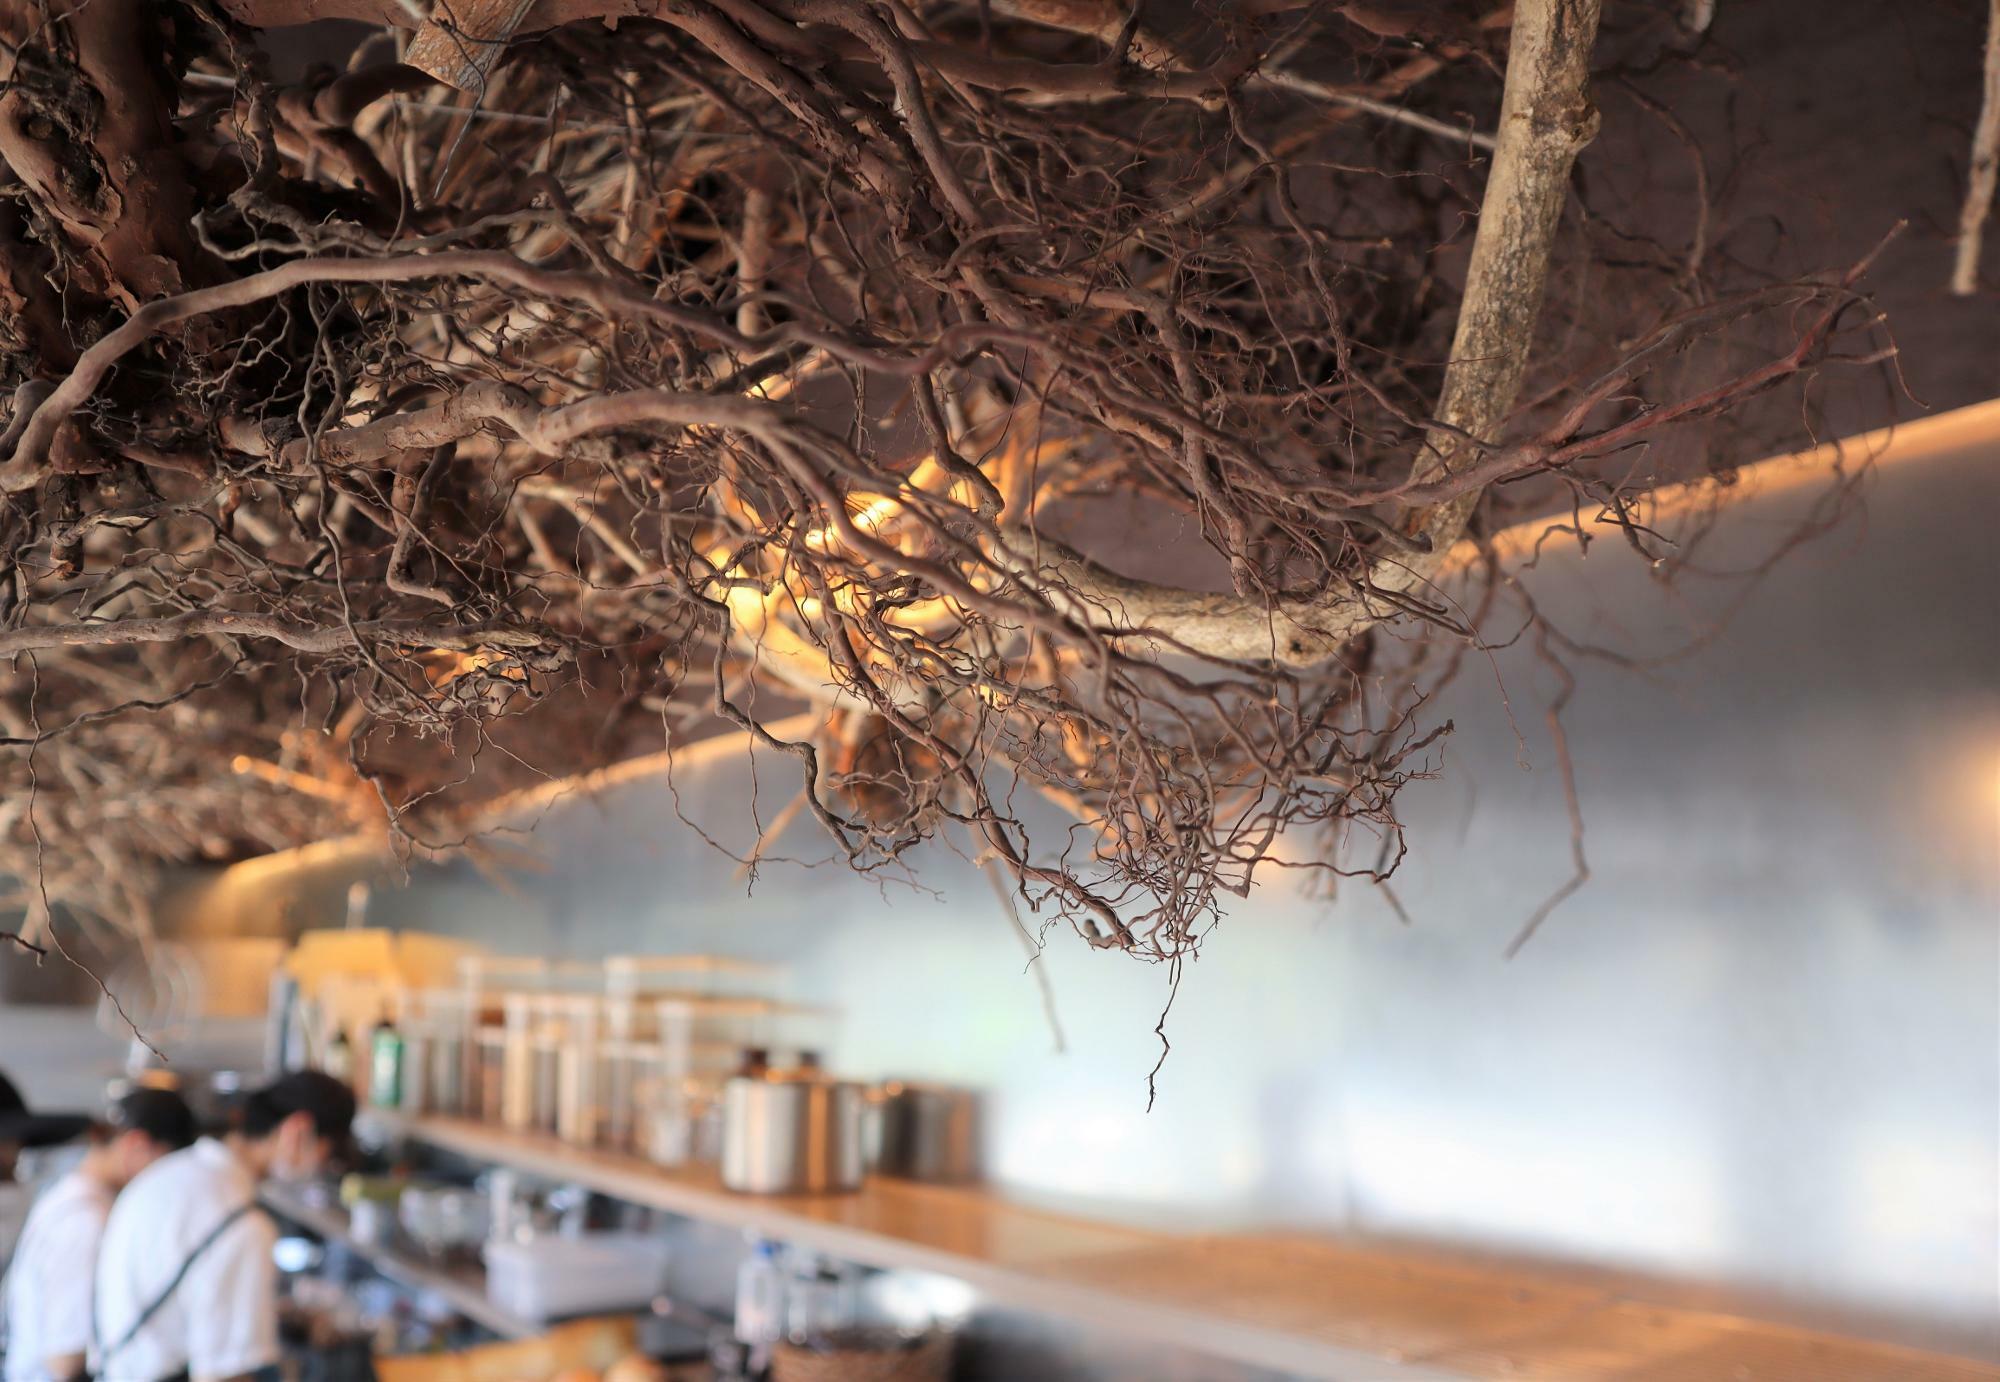 店舗内の天井にはブルーベリーの根が飾られています。芸術的にも見えますが、土の中を無尽に張り巡らされた細い根まで間近で見ると生命力を感じます。